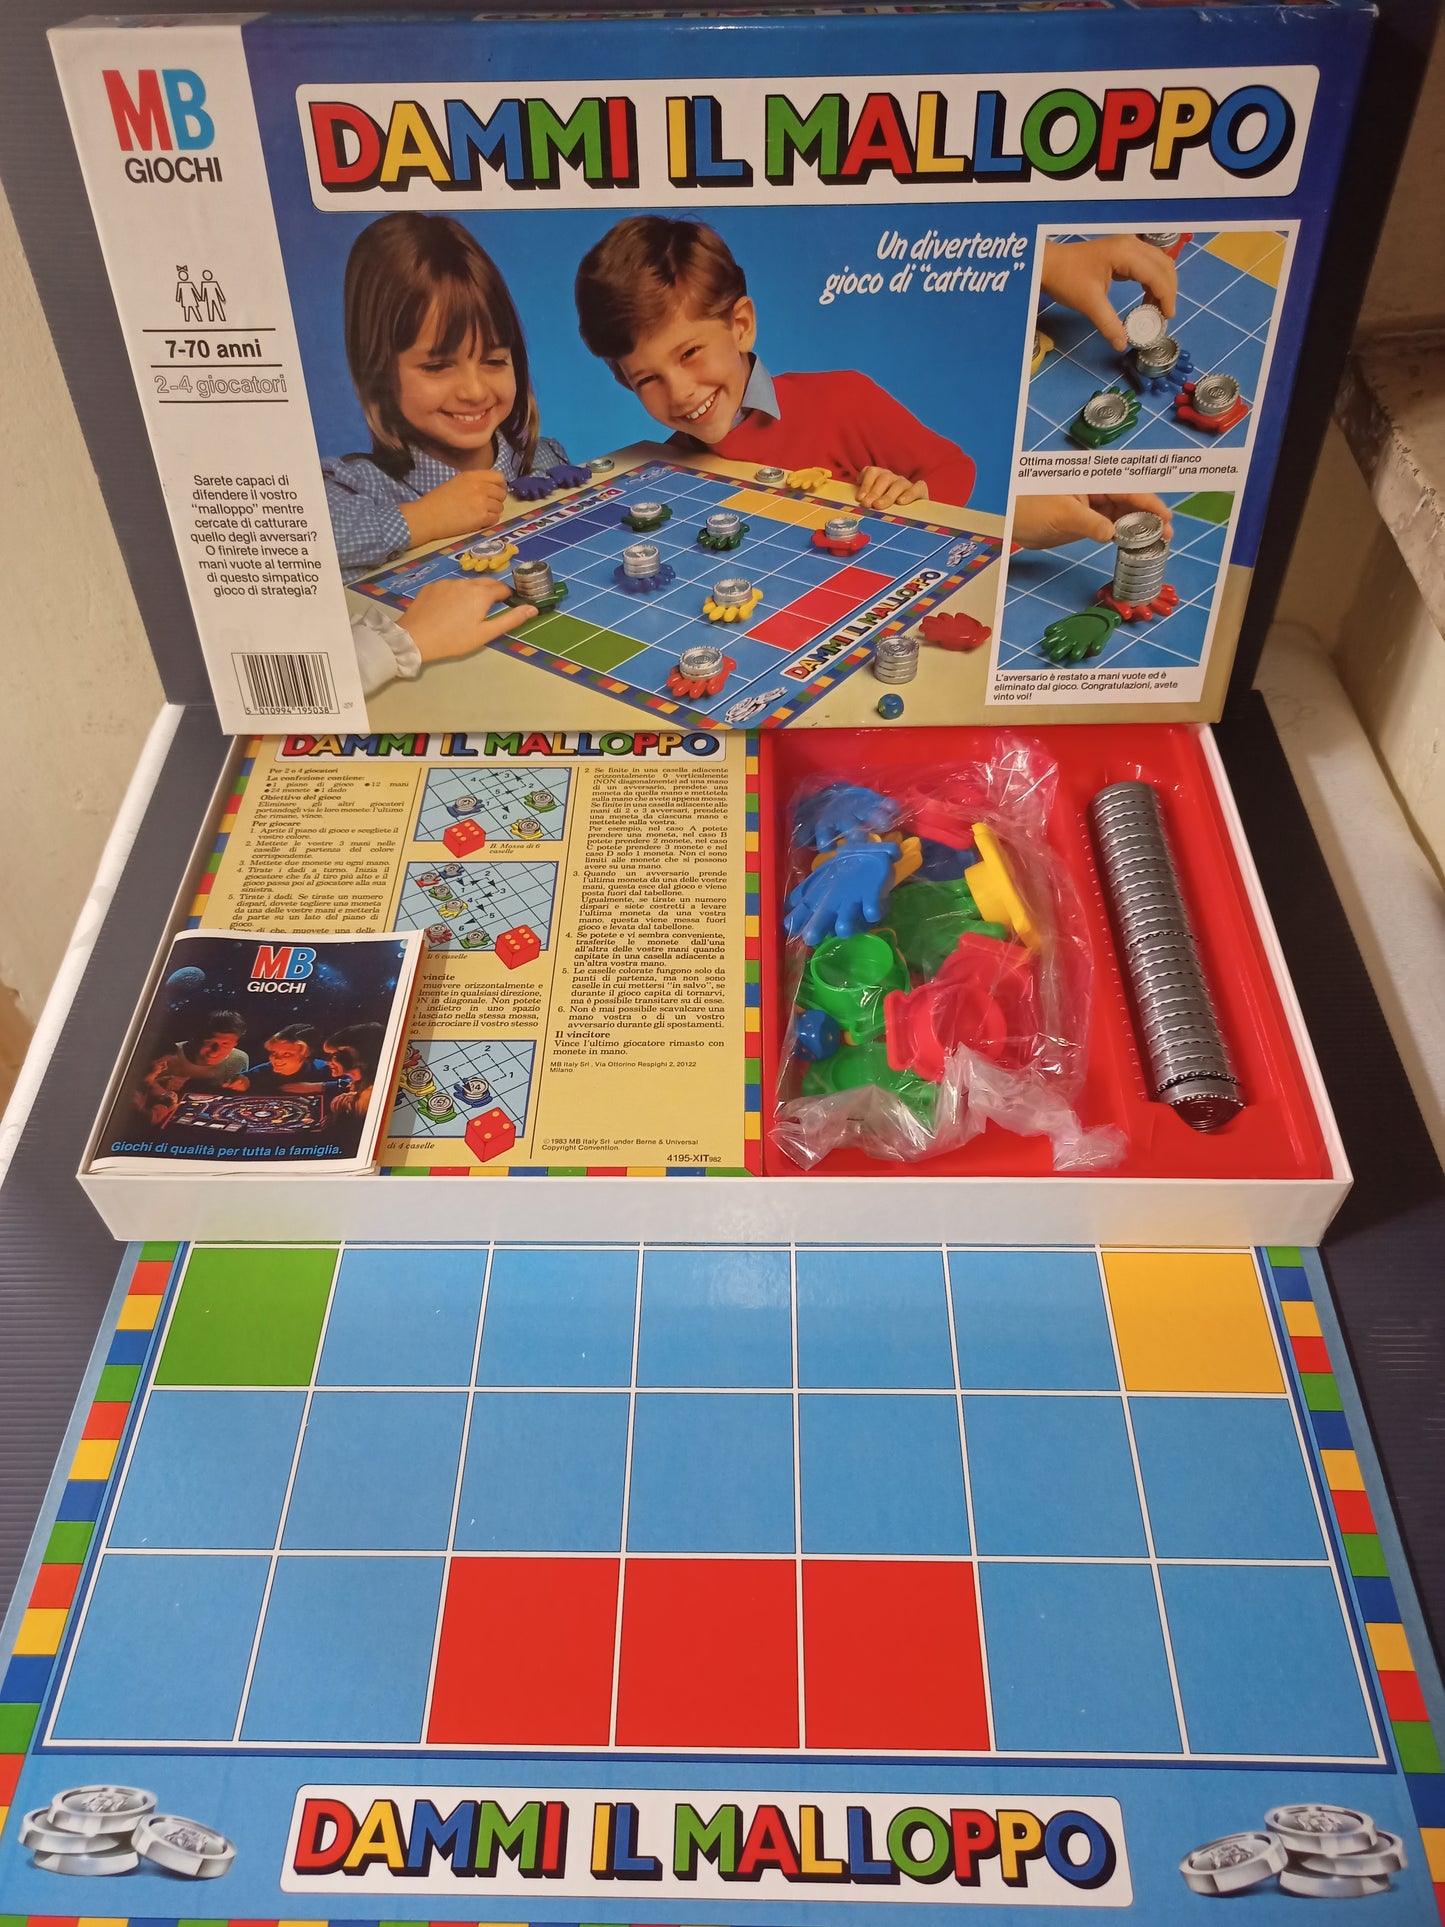 Dammi Il Malloppo board game by MB, original from the 80s